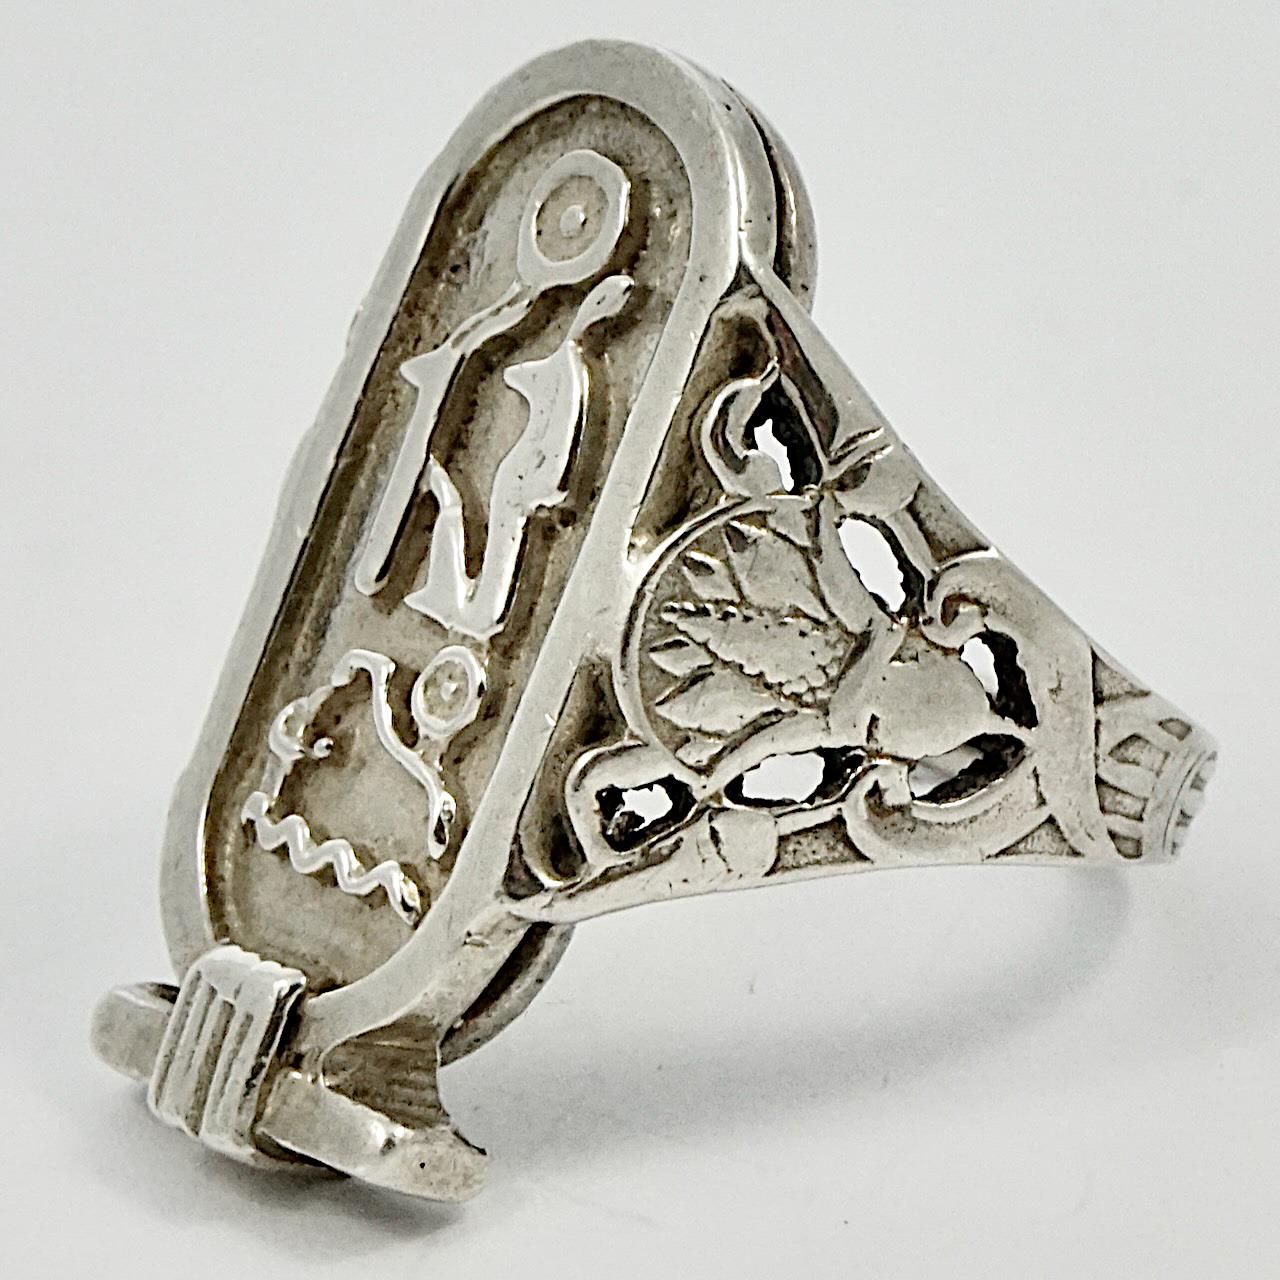 Wunderschöner Ring aus Sterlingsilber im ägyptischen Revival-Stil mit pharaonischer Kartusche und Hieroglyphen. Die Schultern sind mit einer hübschen Lotosblume verziert. Ringgröße UK P 1/2, US 7 3/4, Innendurchmesser 1,8 cm / .7 inch, und Länge